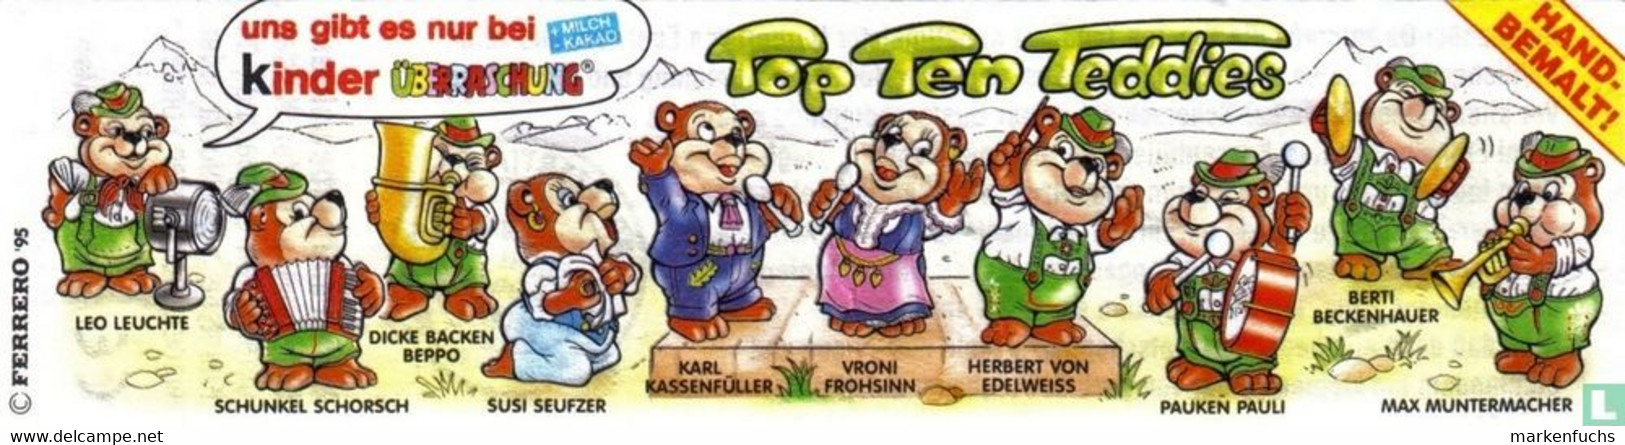 Top Ten Teddies / Musiker 1995 / Berti Beckenhauer + BPZ - Maxi (Kinder-)